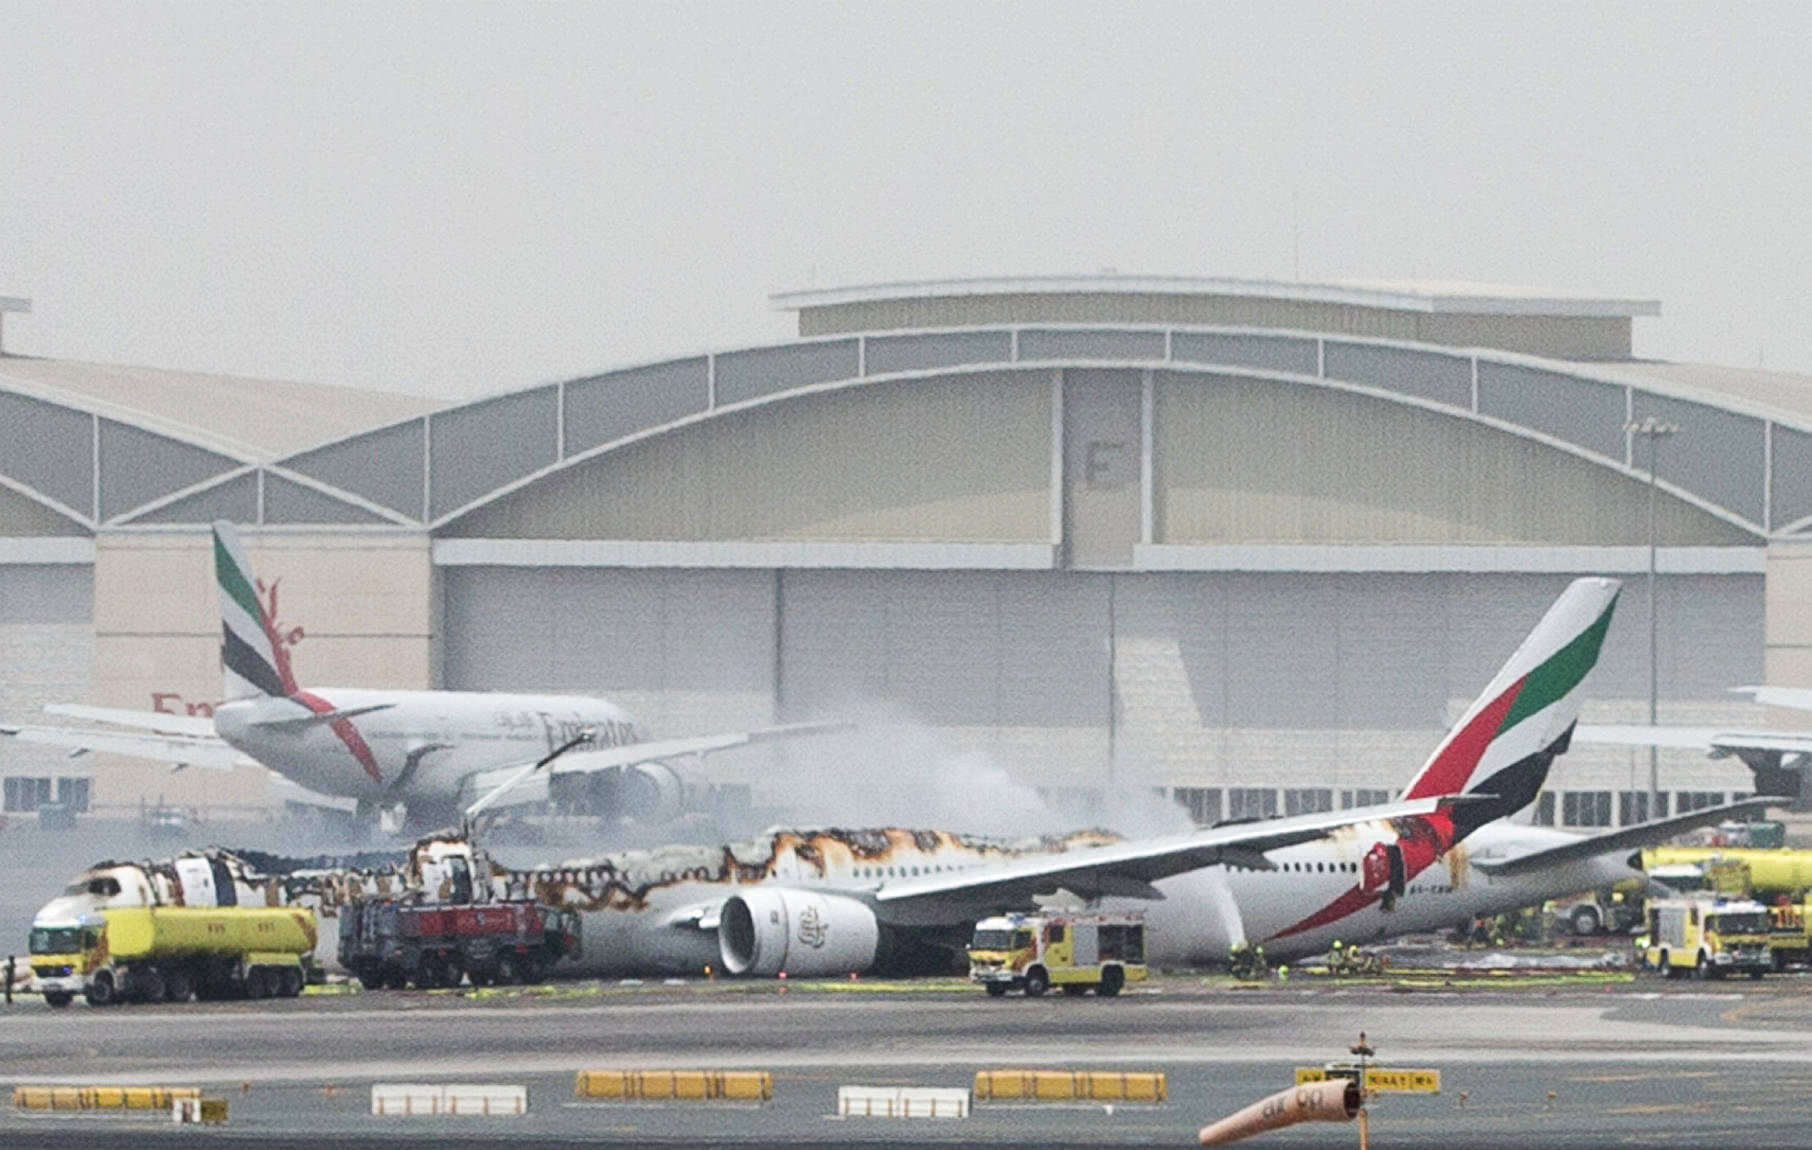 Emirates flight from Trivandrum to Dubai crash-lands